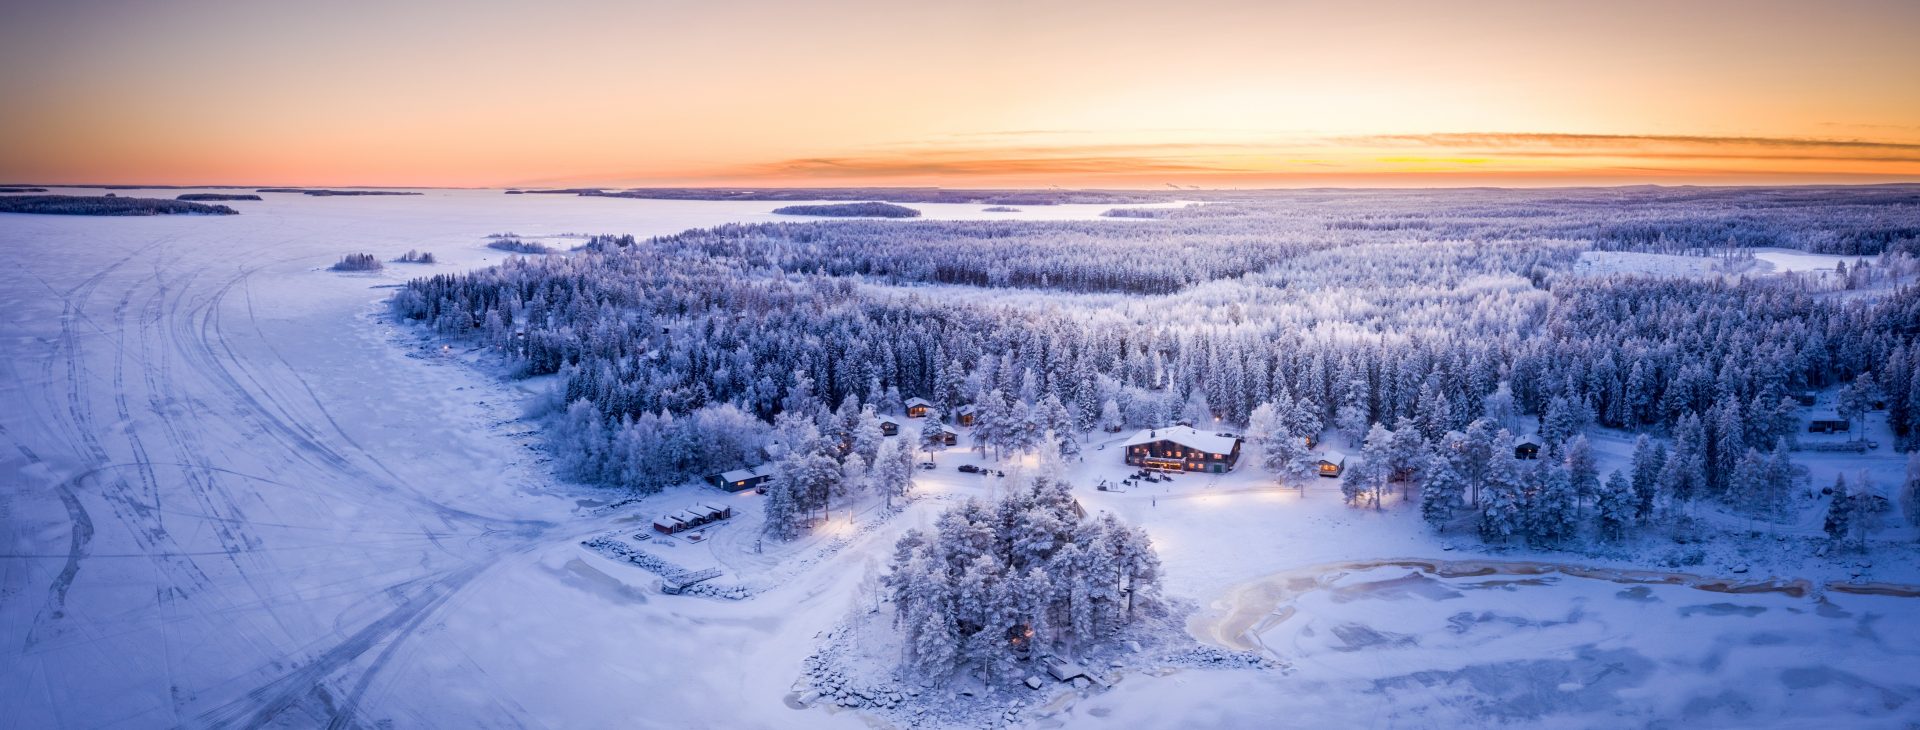 Brändön Lodge,Zweden,exterieur vanuit de lucht